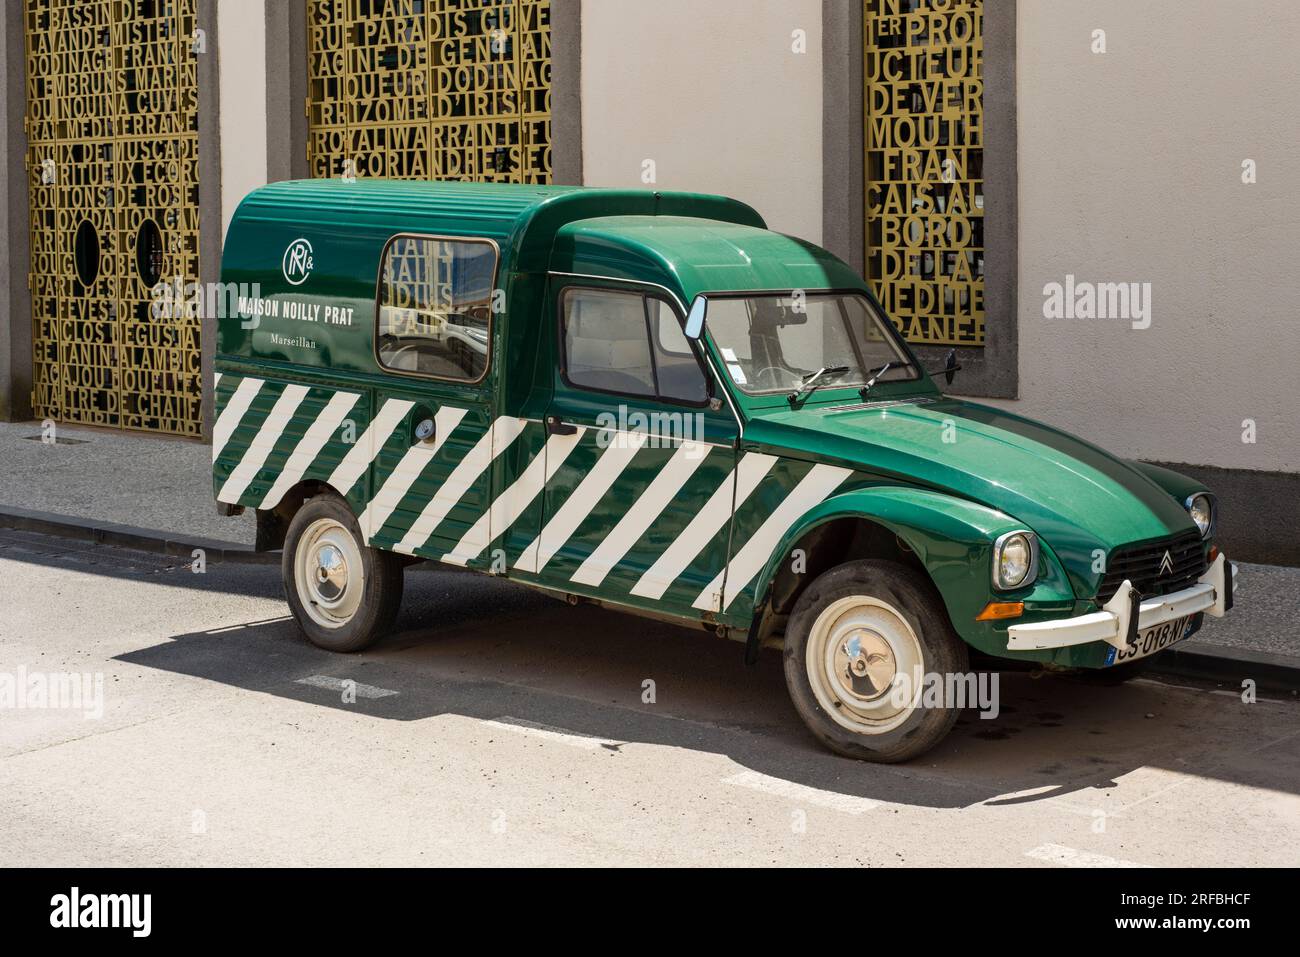 Small vintage Citroen van used for Noilly Prat, Marseillan